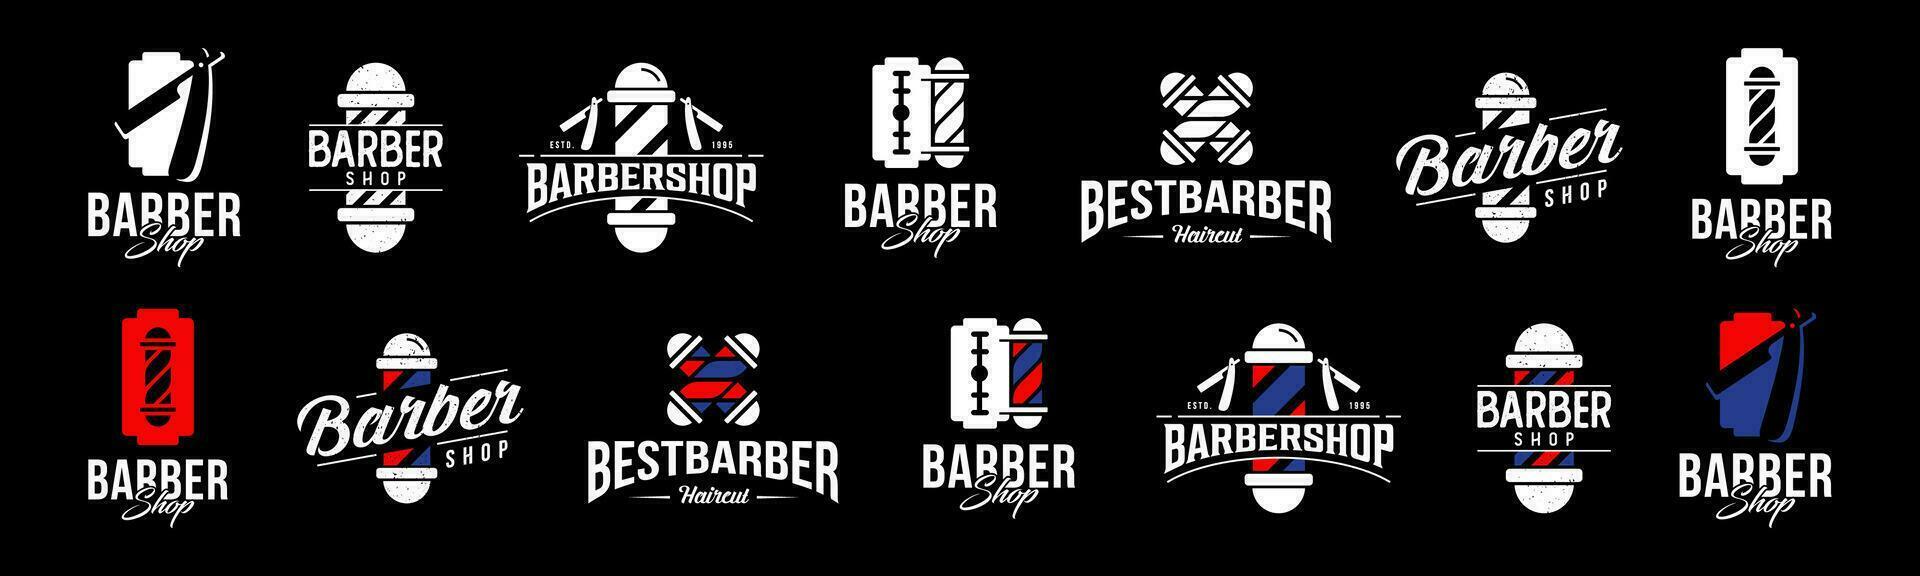 barbería logo diseño vector, editable y redimensionable eps 10 vector